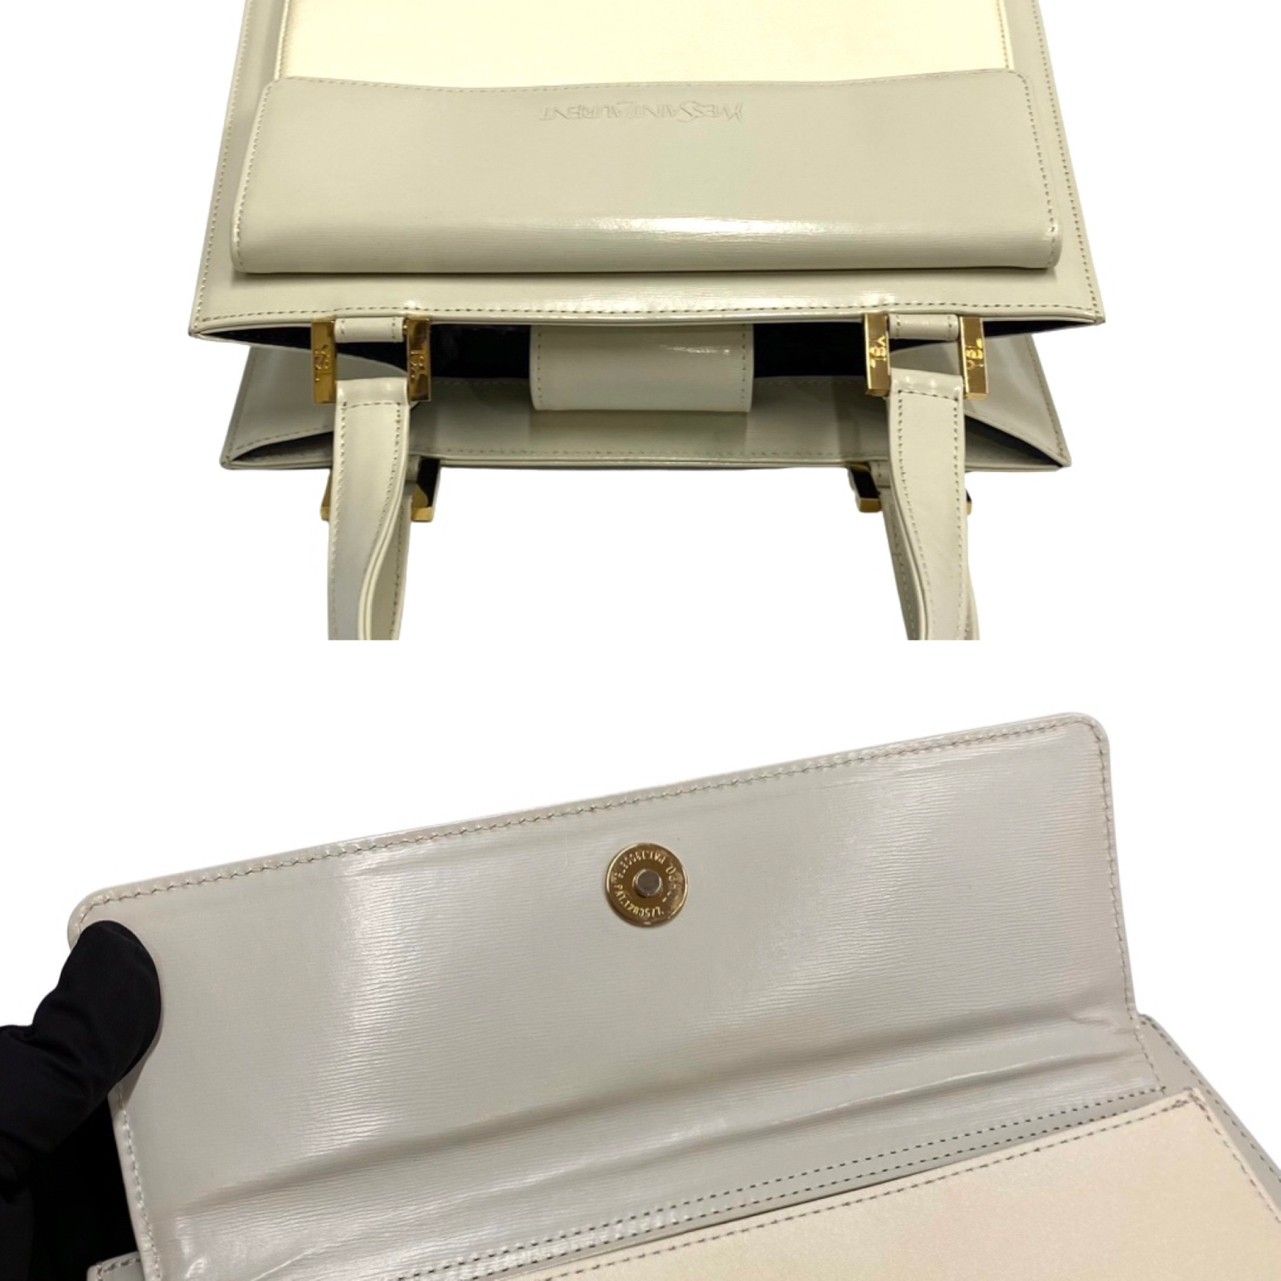 極 美品 保存袋付 YVES SAINT LAURENT イヴ・サンローラン ロゴ 金具 ナイロン レザー ハンドバッグ ミニ トートバッグ オフホワイト 28339